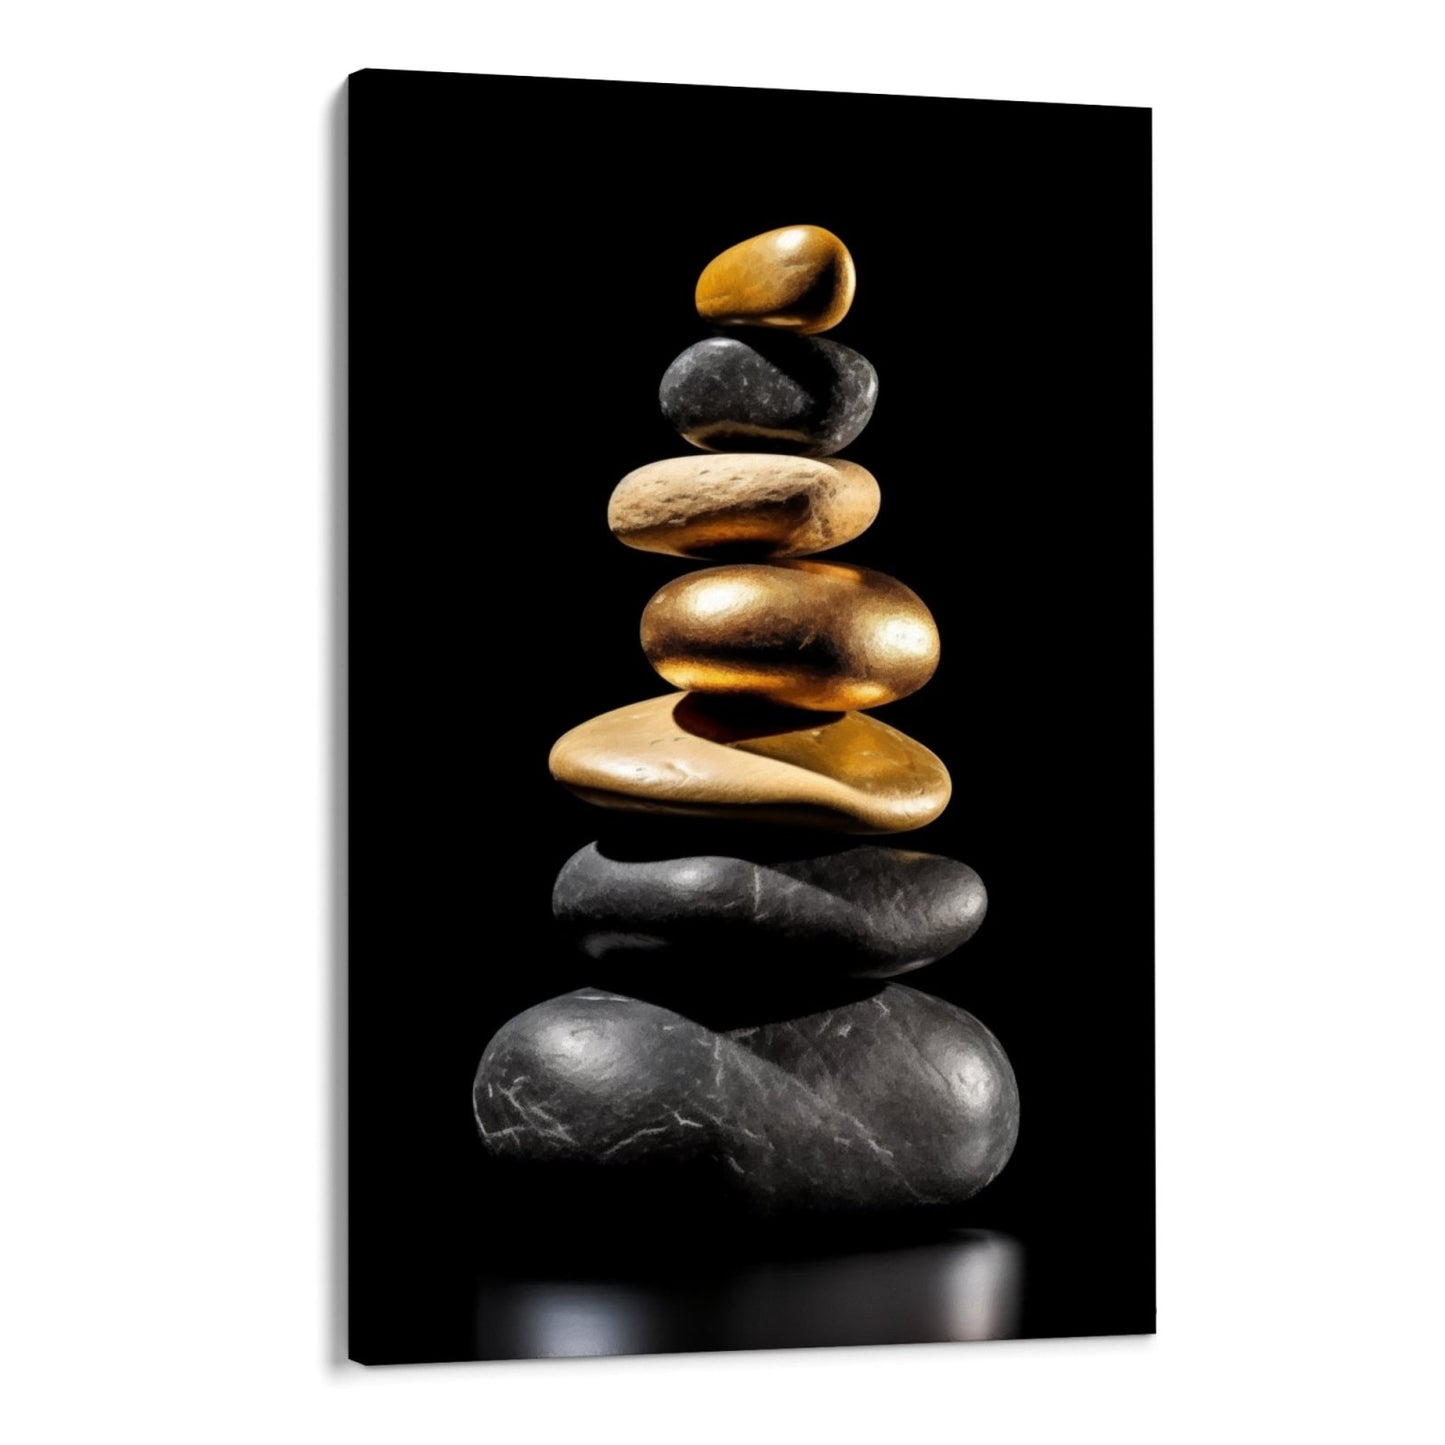 Equilibrio de piedras